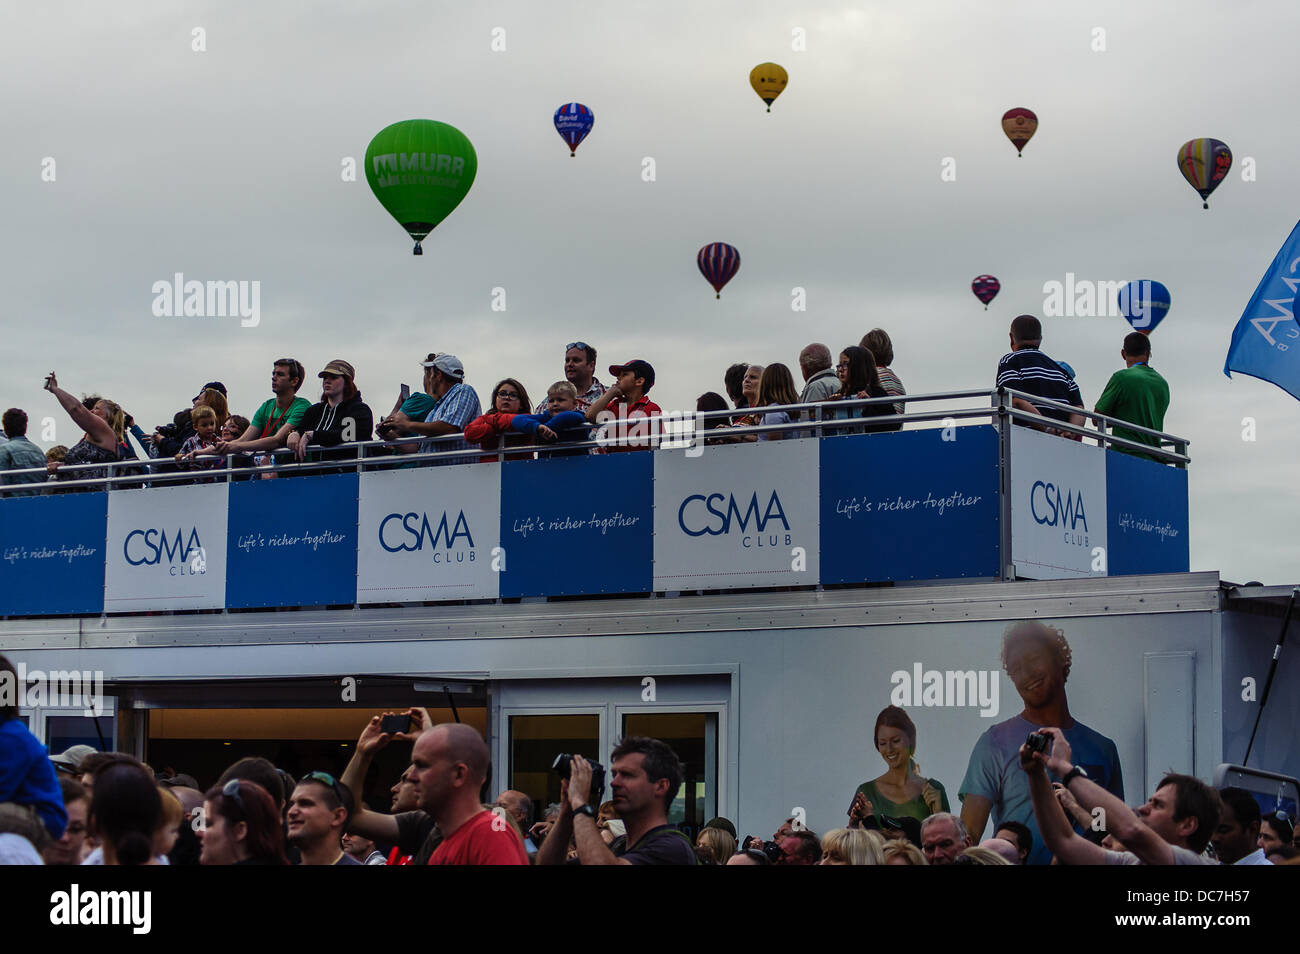 Bristol REGNO UNITO. 10 Ago, 2013. Il Bristol International Balloon Fiesta è ora nel suo trentacinquesimo anno ed è il più grande d'Europa la mongolfiera Foto Stock